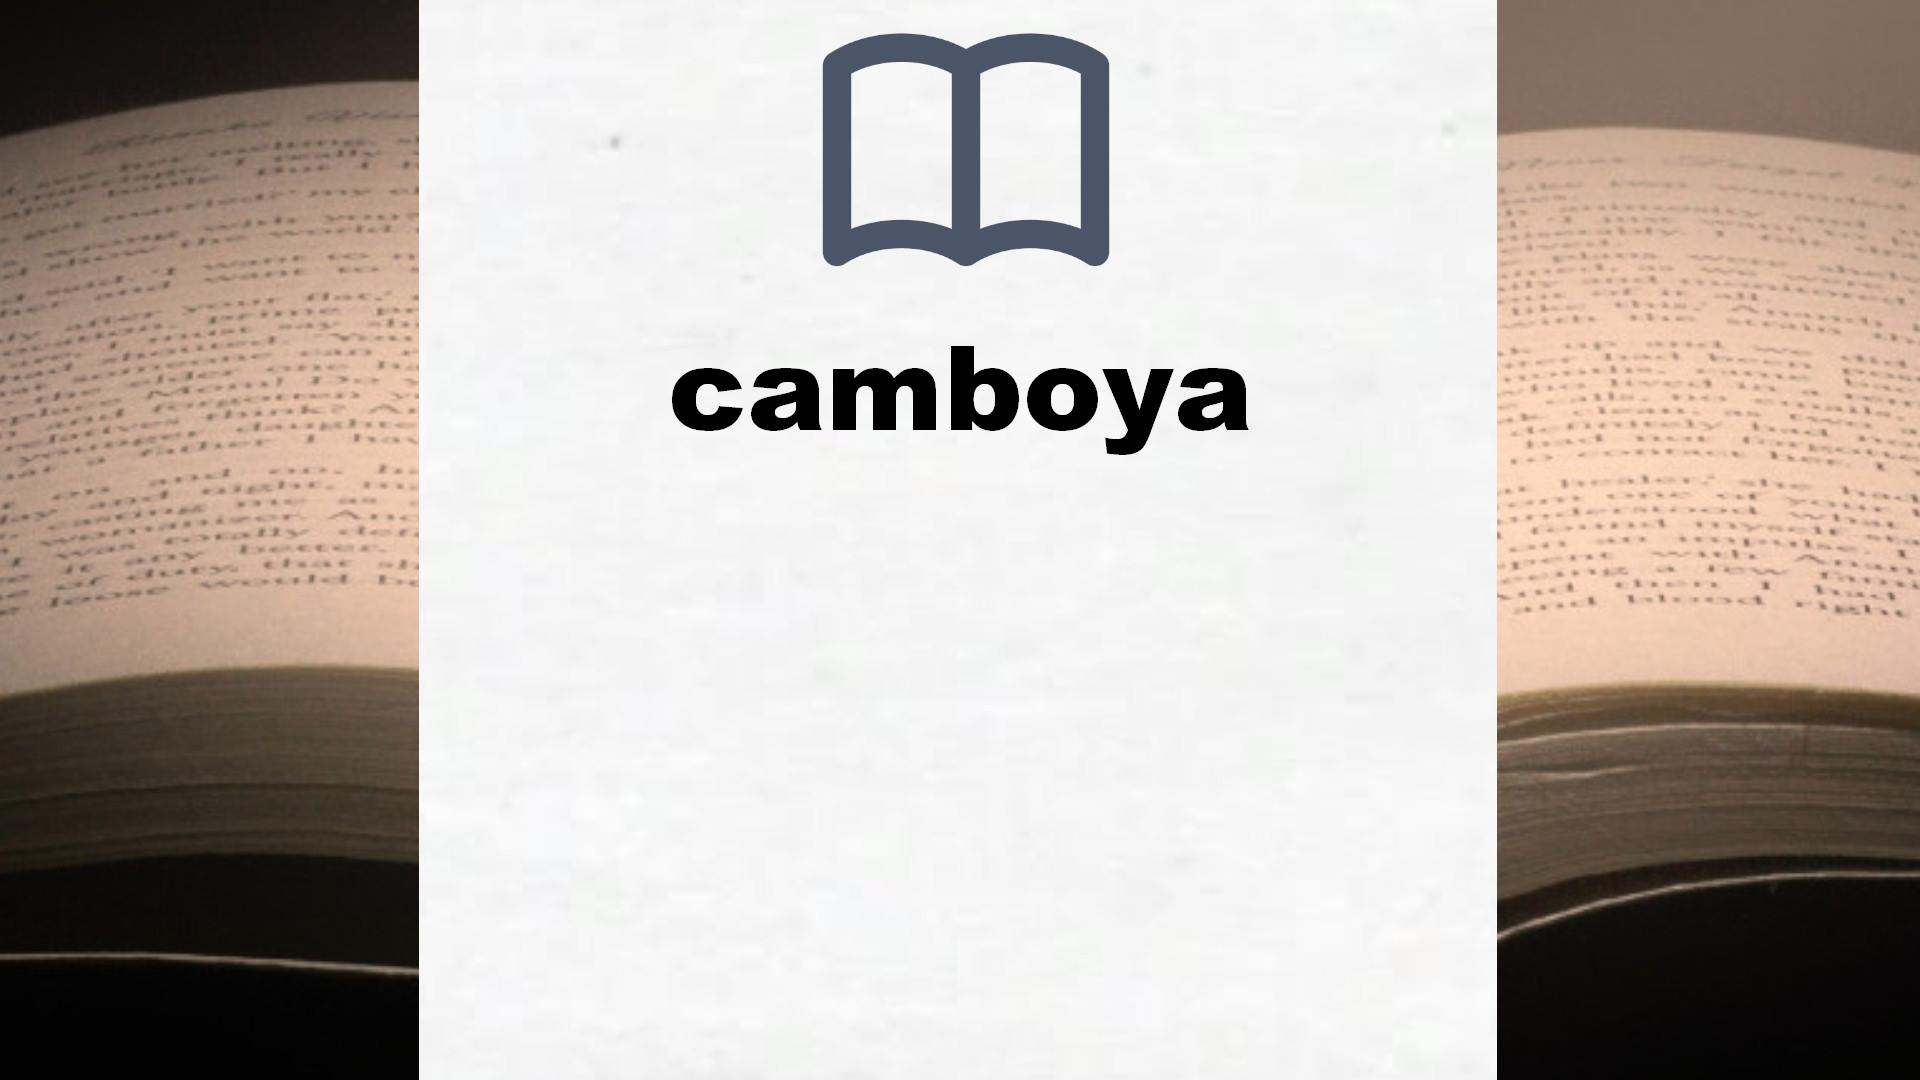 Libros sobre camboya